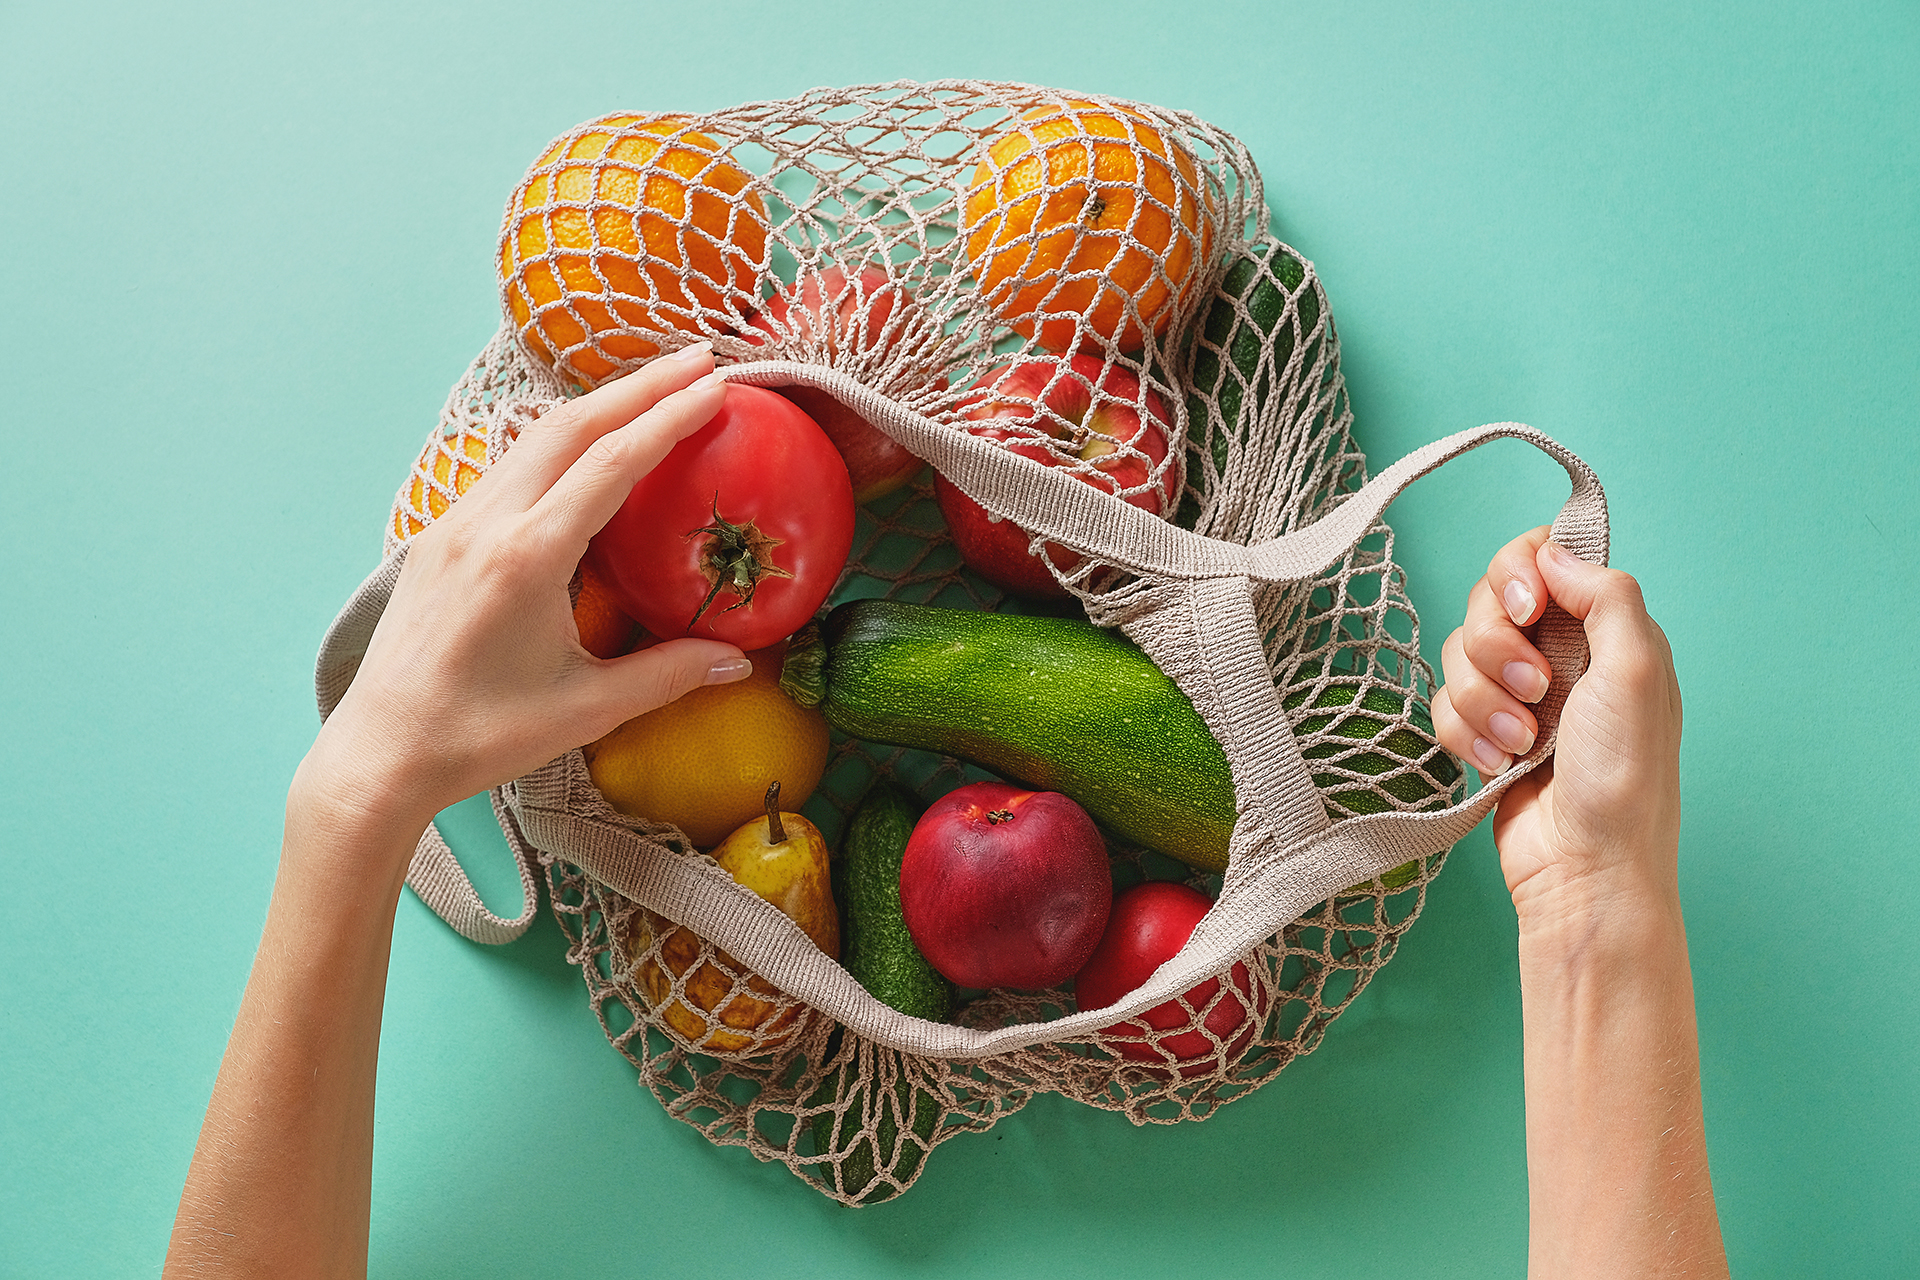 Las verduras son indispensables, ya que al aportar fibra compensan los picos de glucemia que pueden producir el resto de los alimentos como ser una pasta o un arroz
(Getty Images)